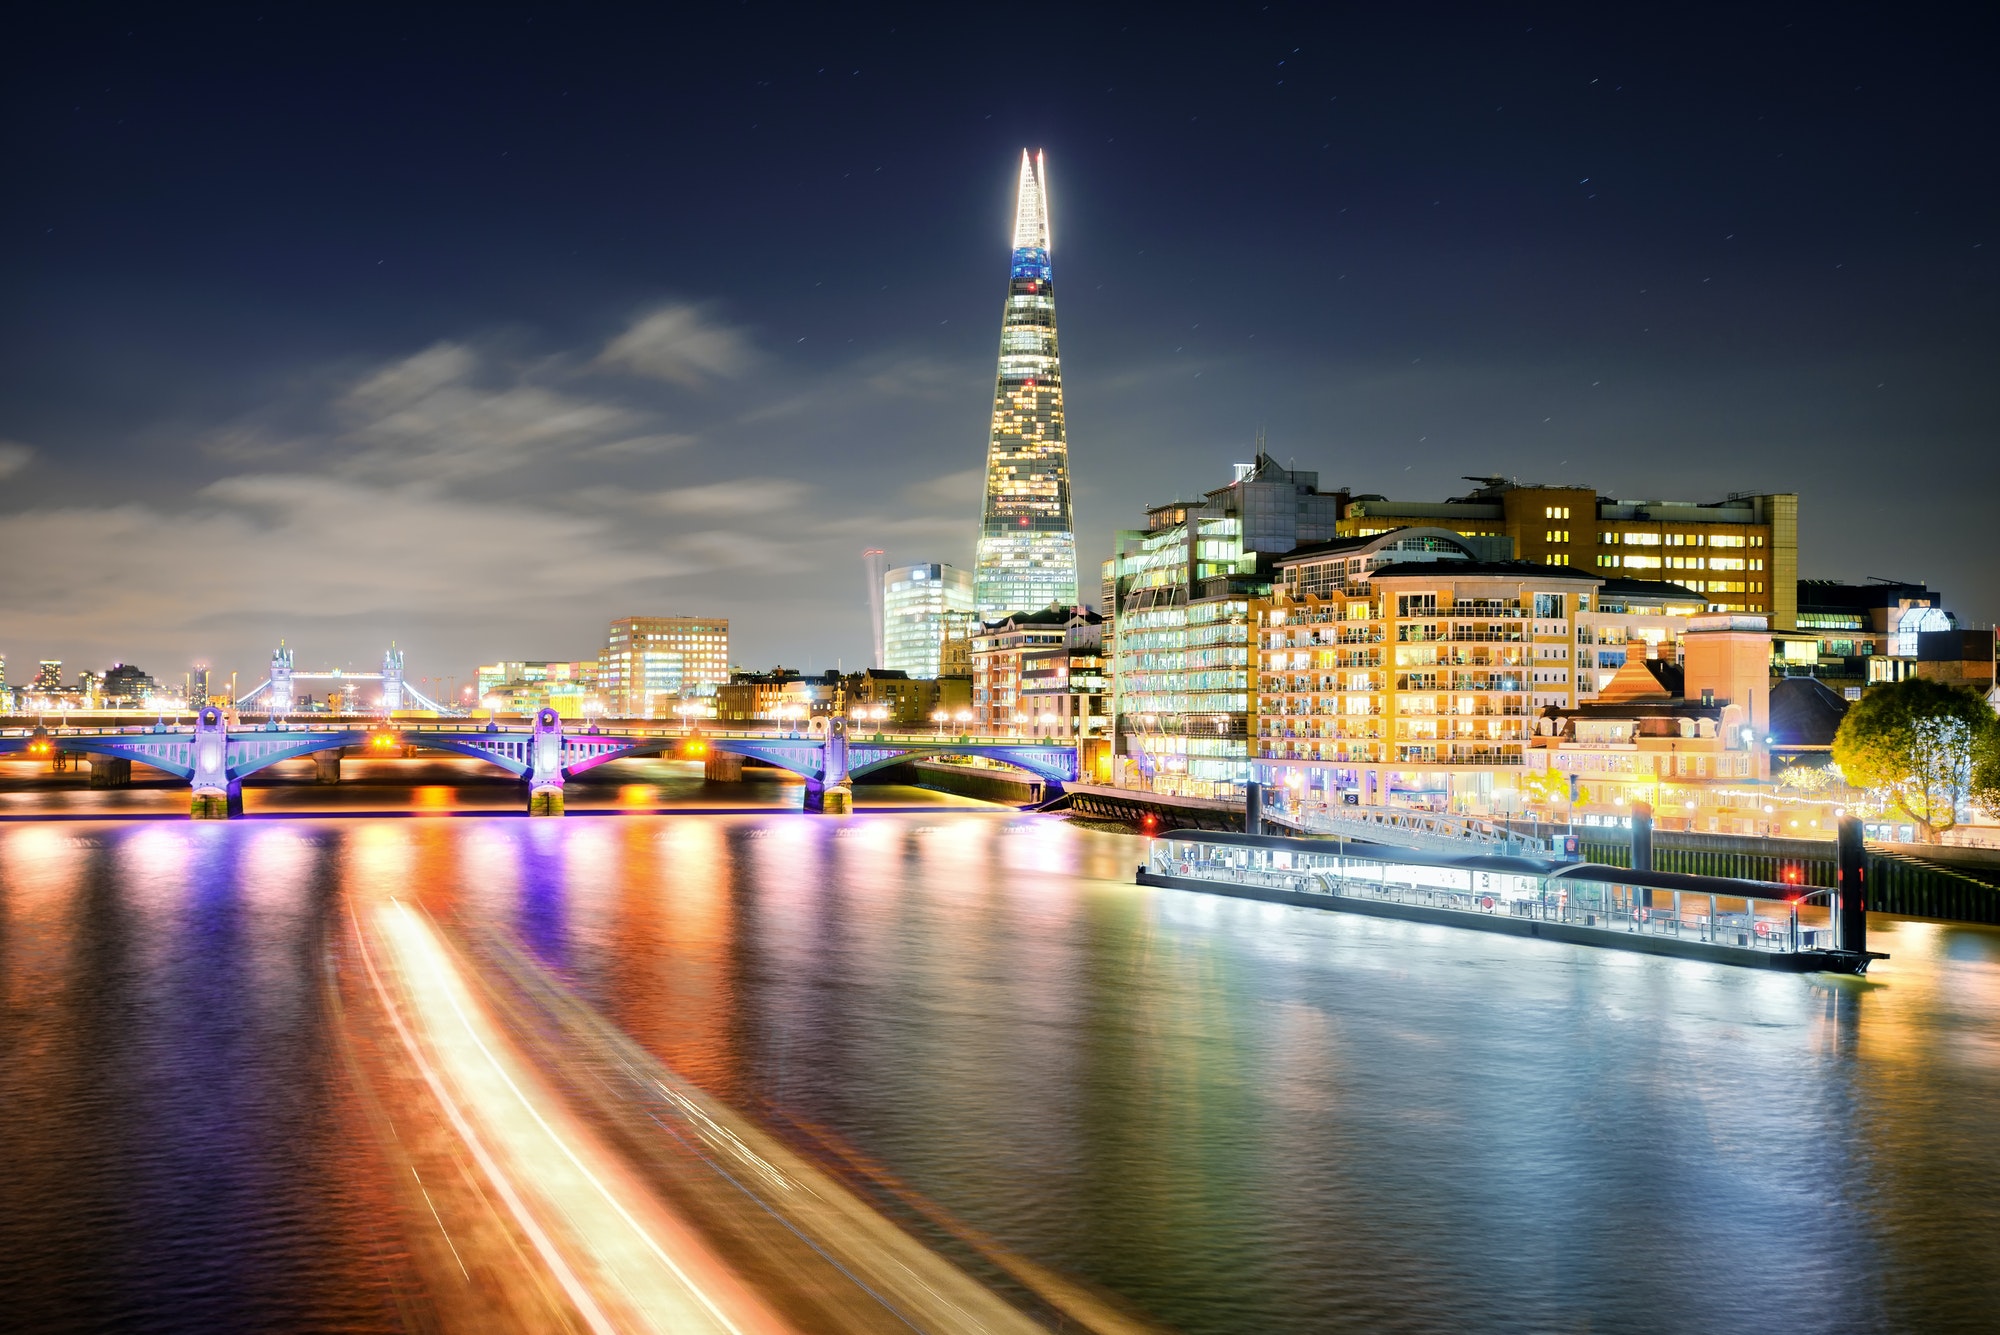 London at night at Thames river, United Kingdom